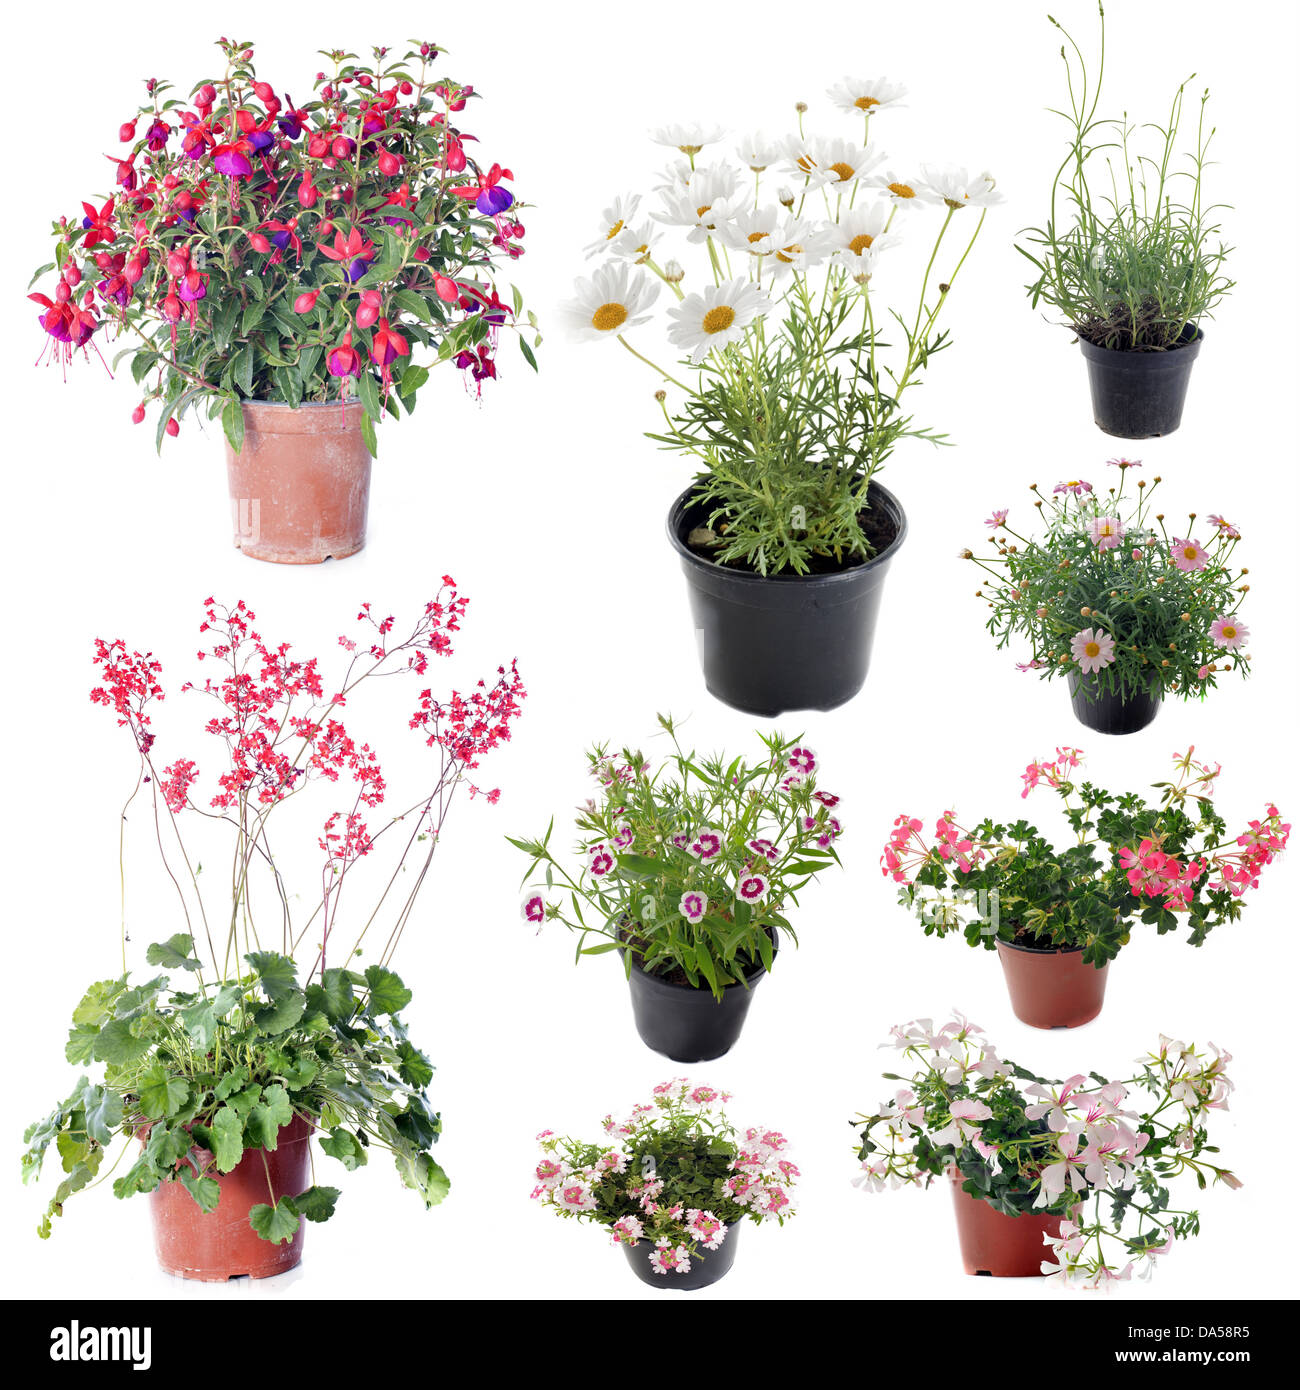 Blumen Pflanzen im Topf vor weißem Hintergrund Stockfotografie - Alamy